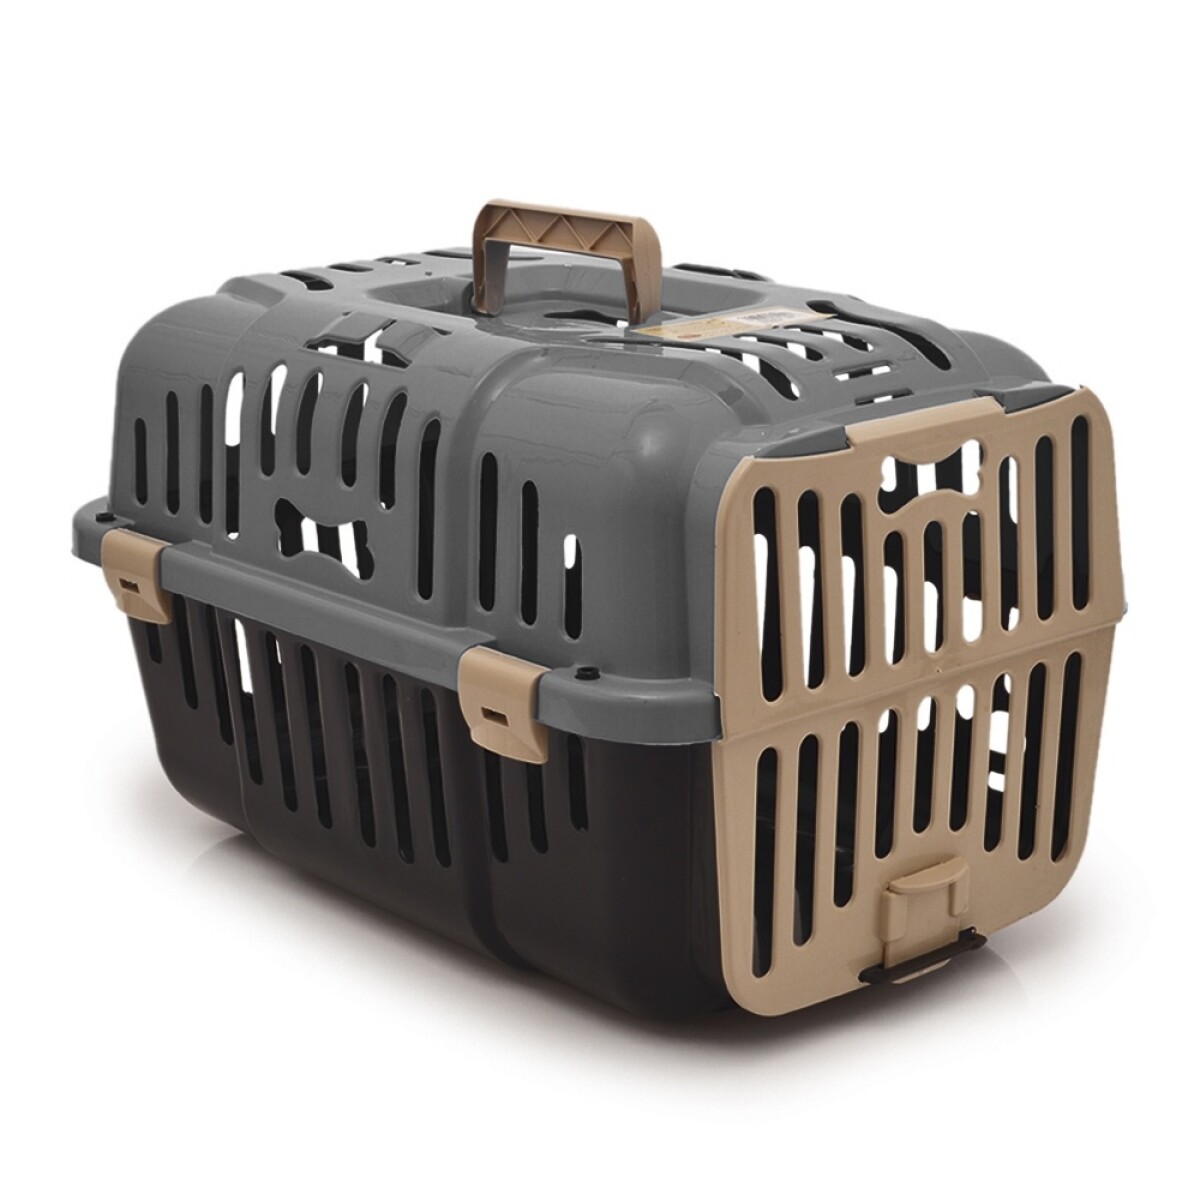 Transportadora Jaula Plástica Rígida para Mascotas Pequeñas - Gris 